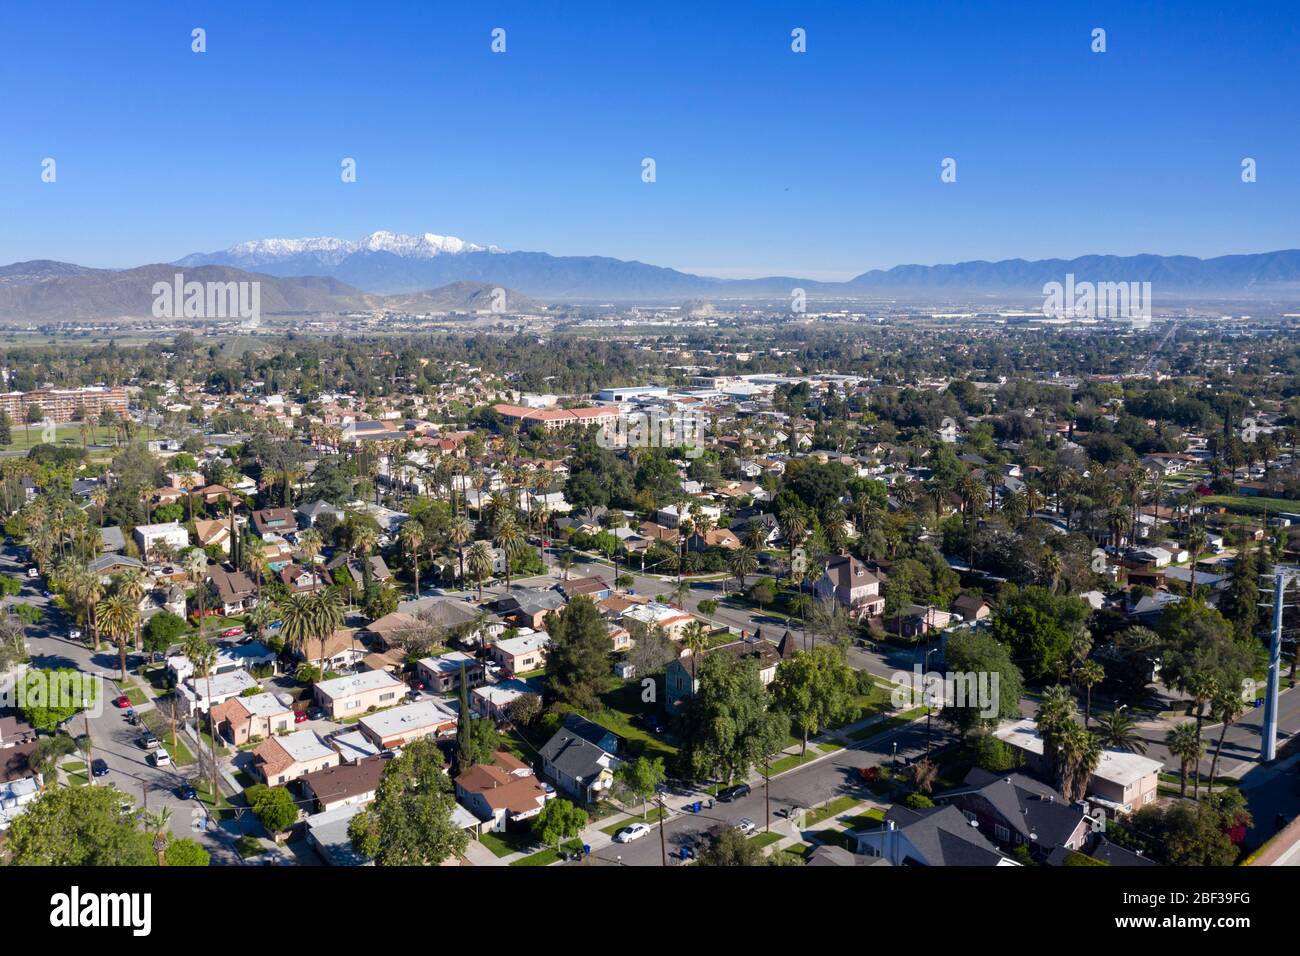 Vue aérienne d'un quartier résidentiel de Riverside California, une journée claire avec des sommets enneigés au loin Banque D'Images